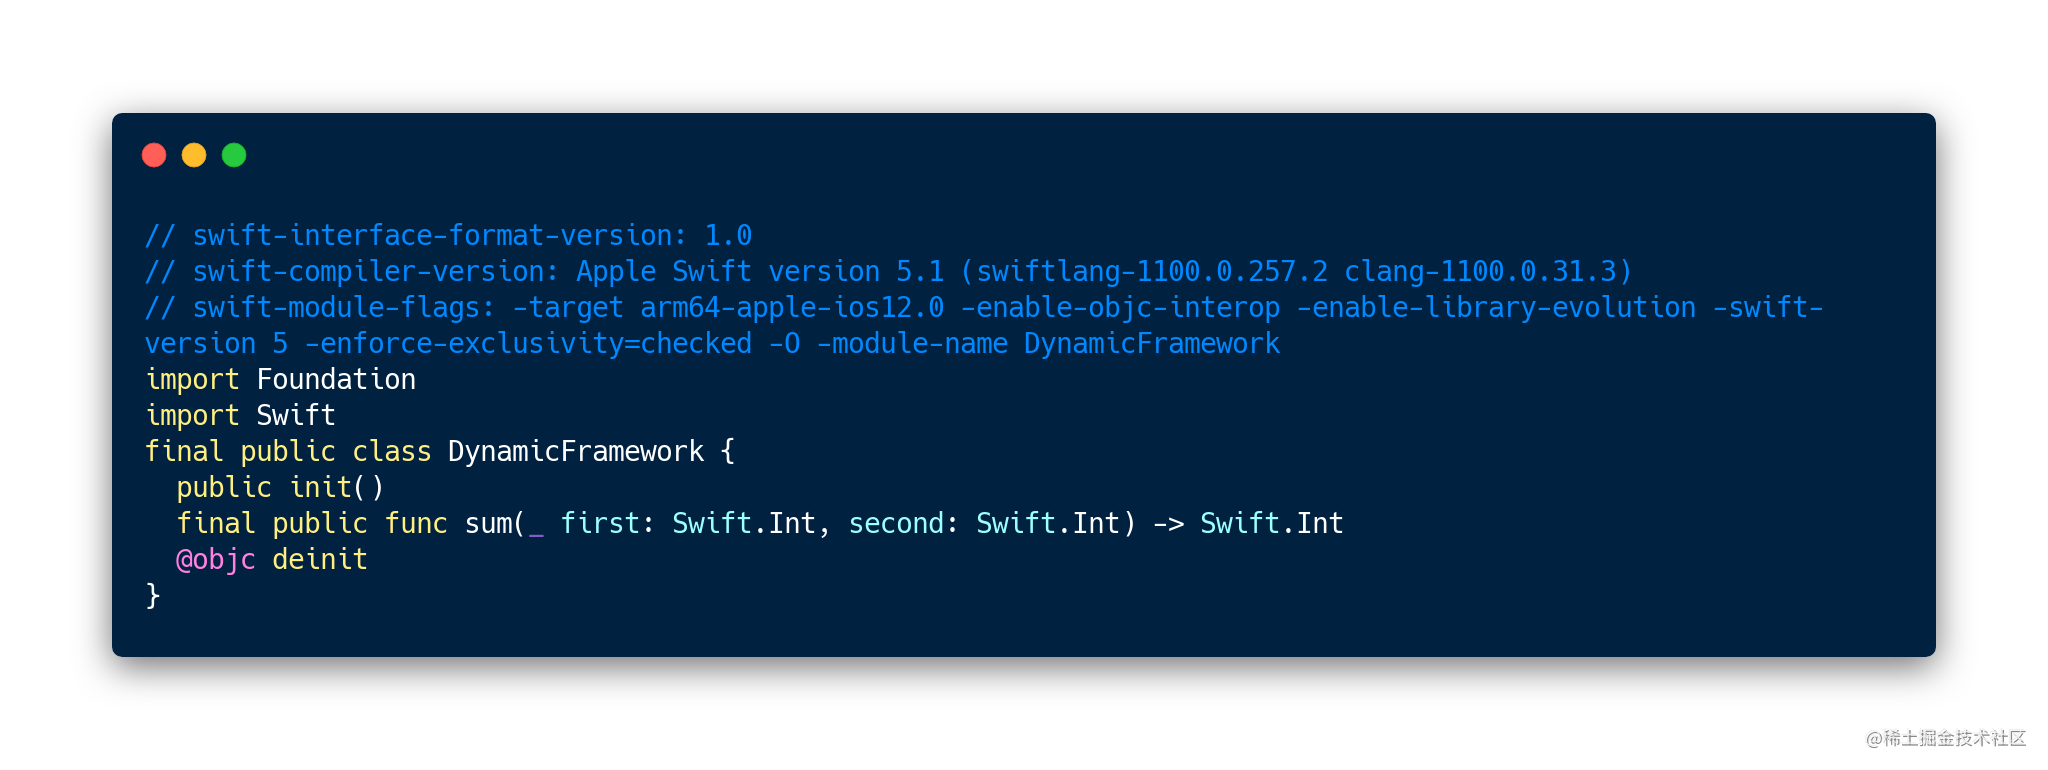 swift-interface